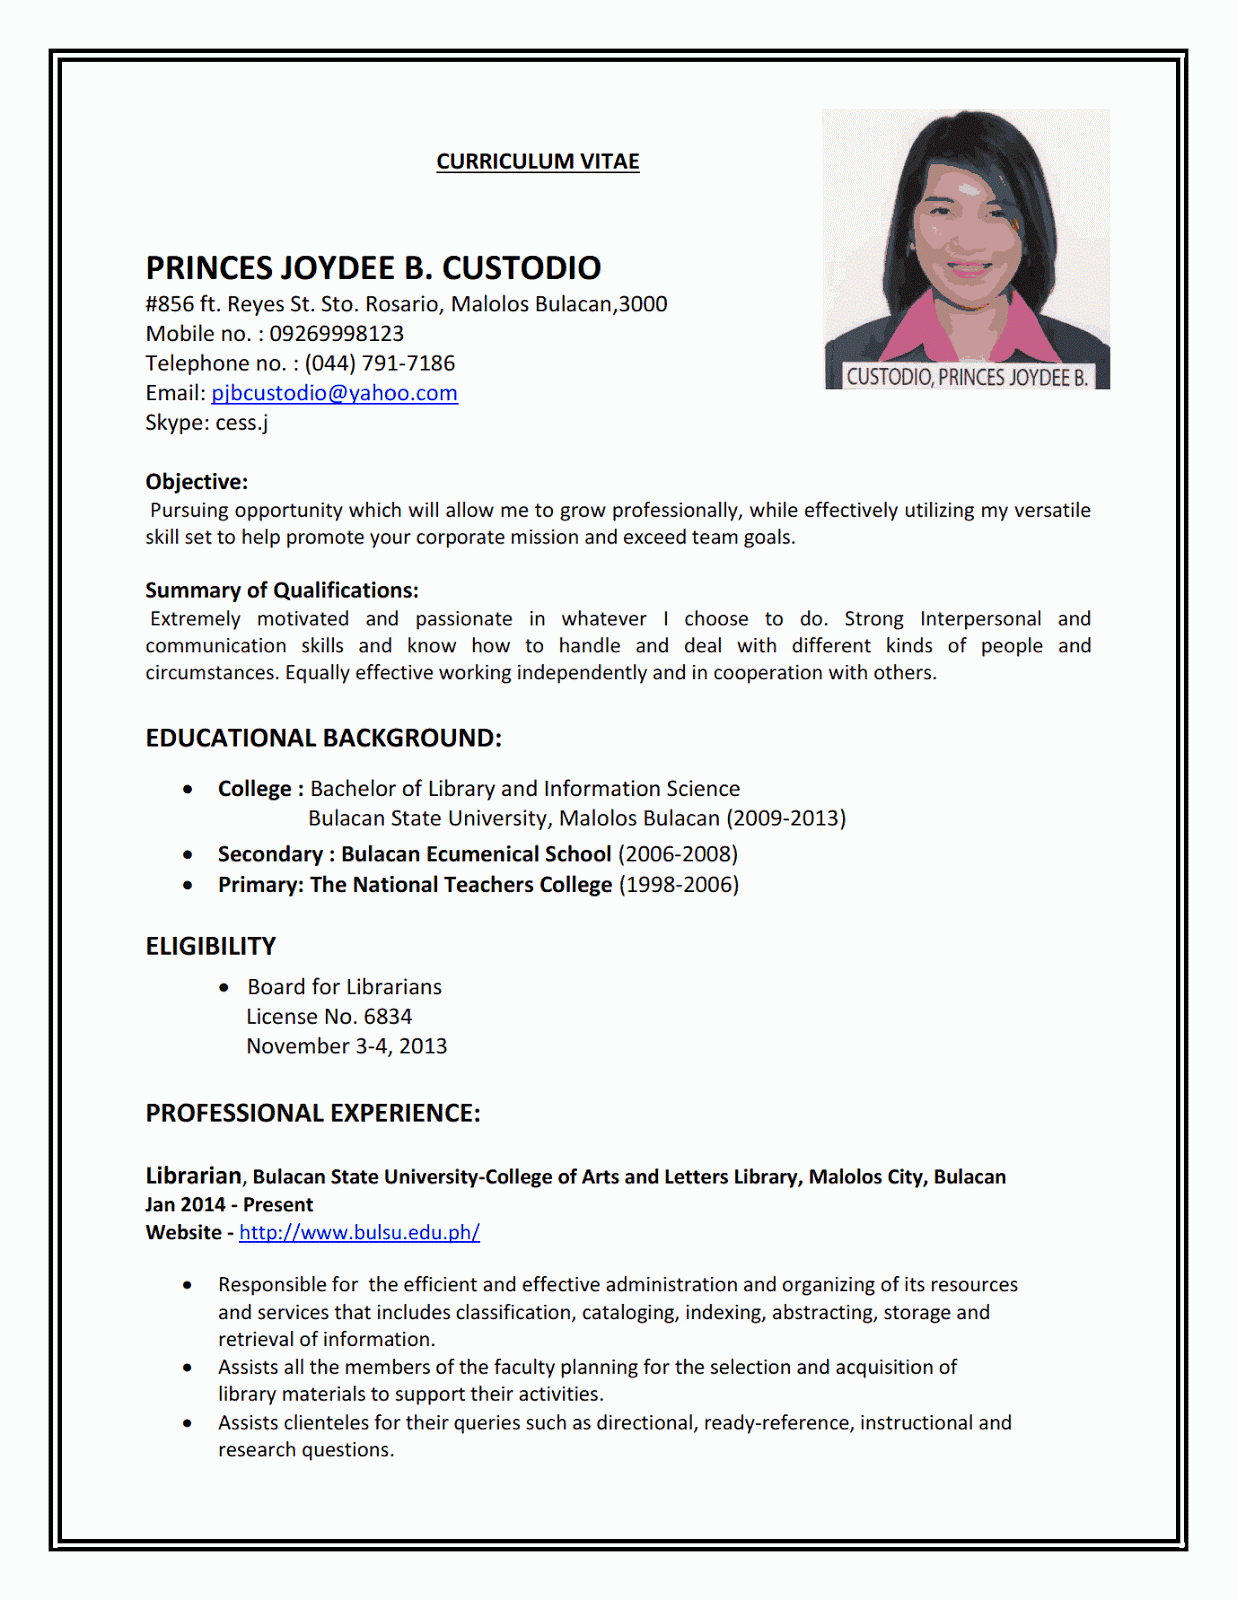 Sample resume making